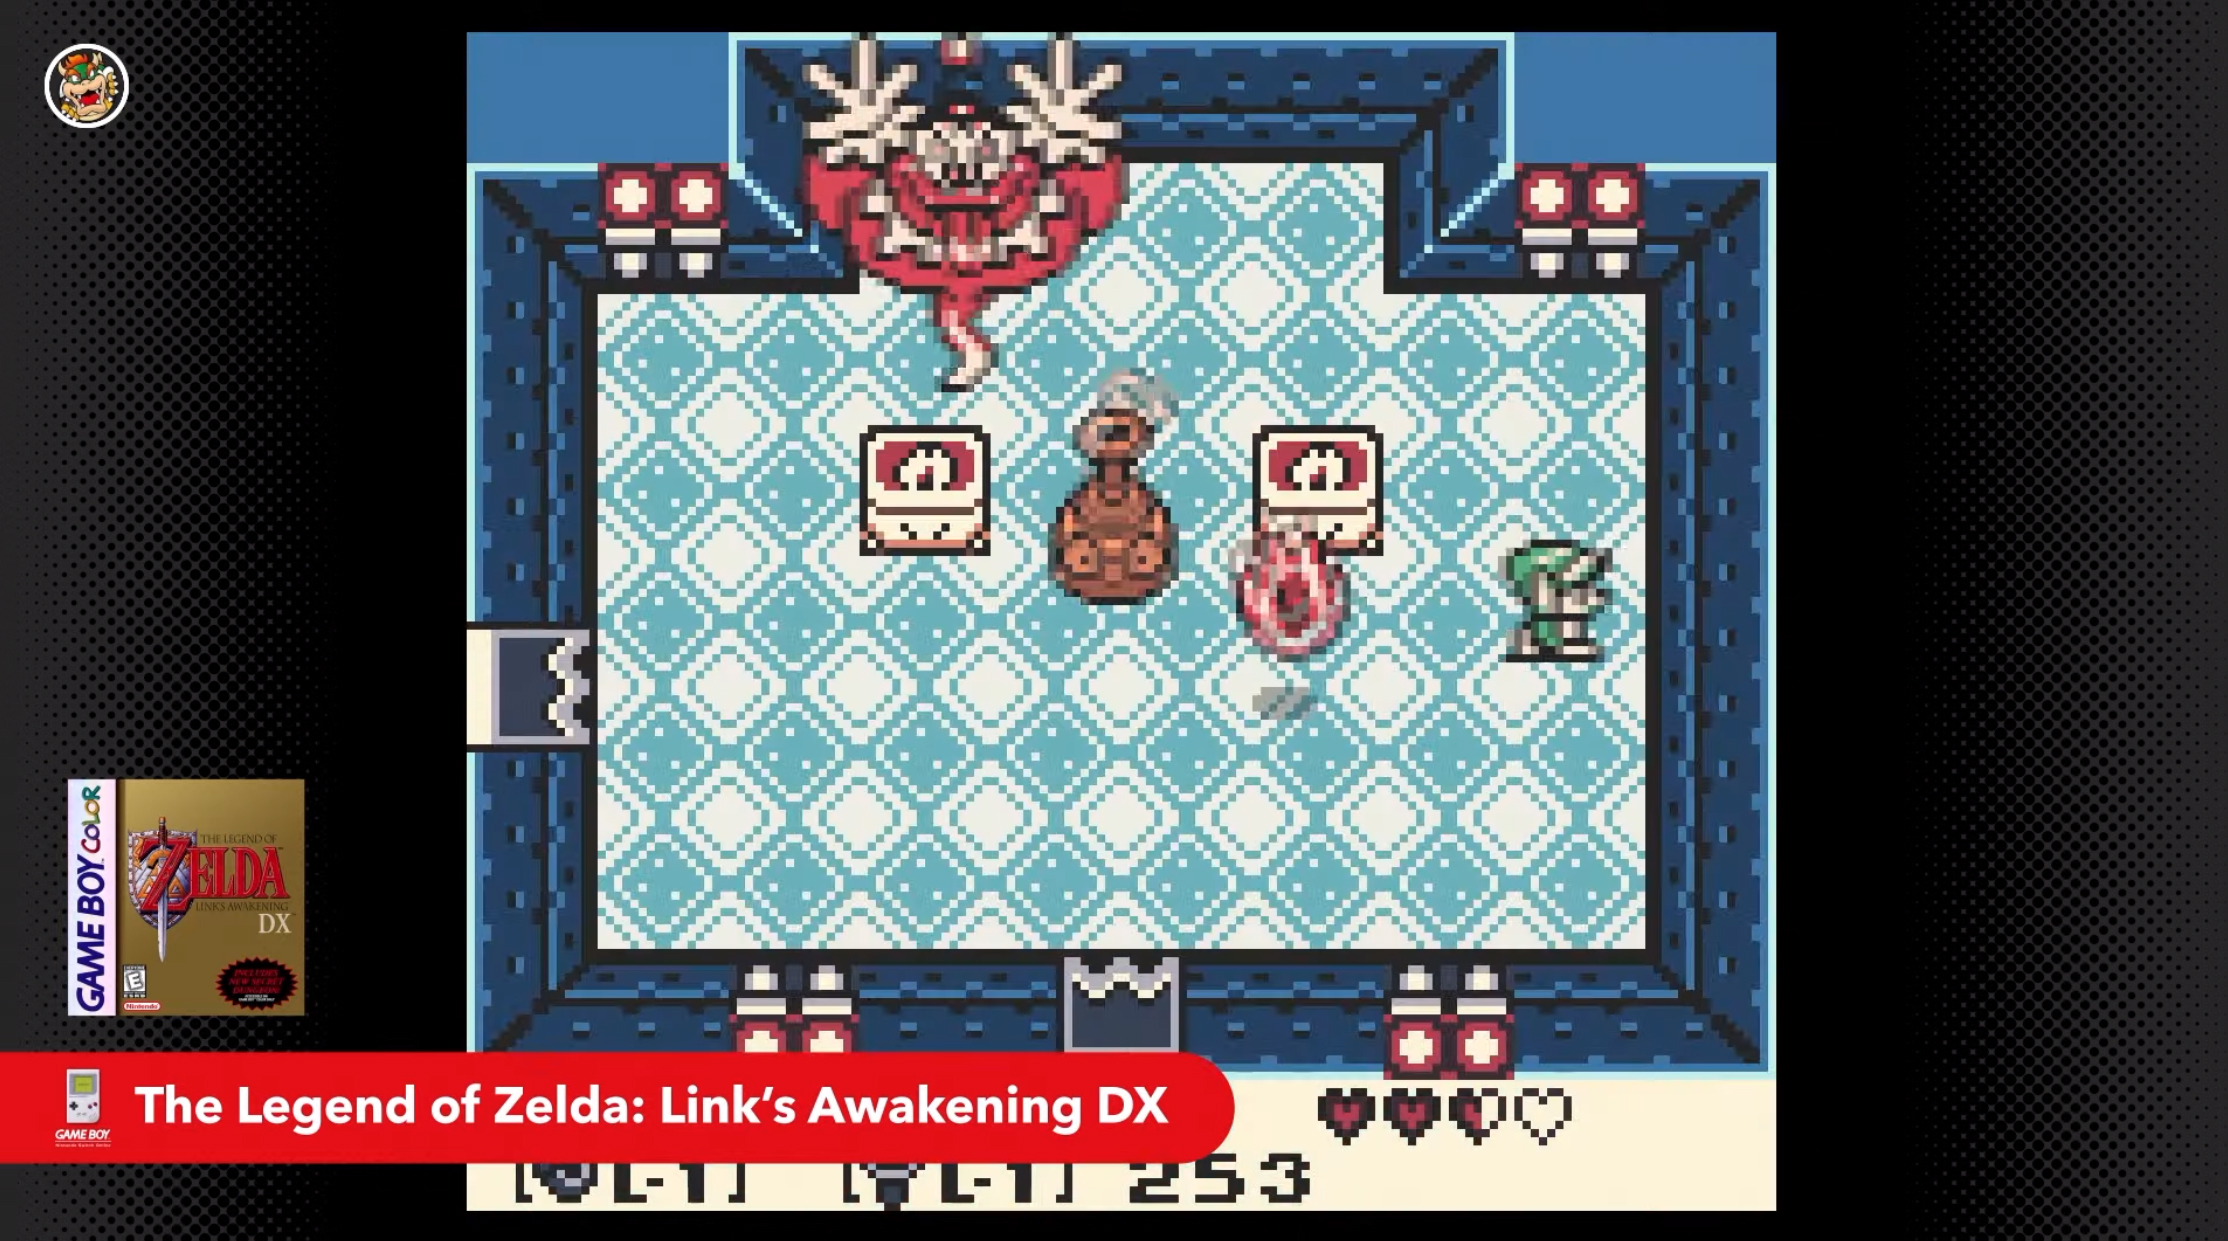 GameBoy Color game - The Legend of Zelda: Link's Awakening DX